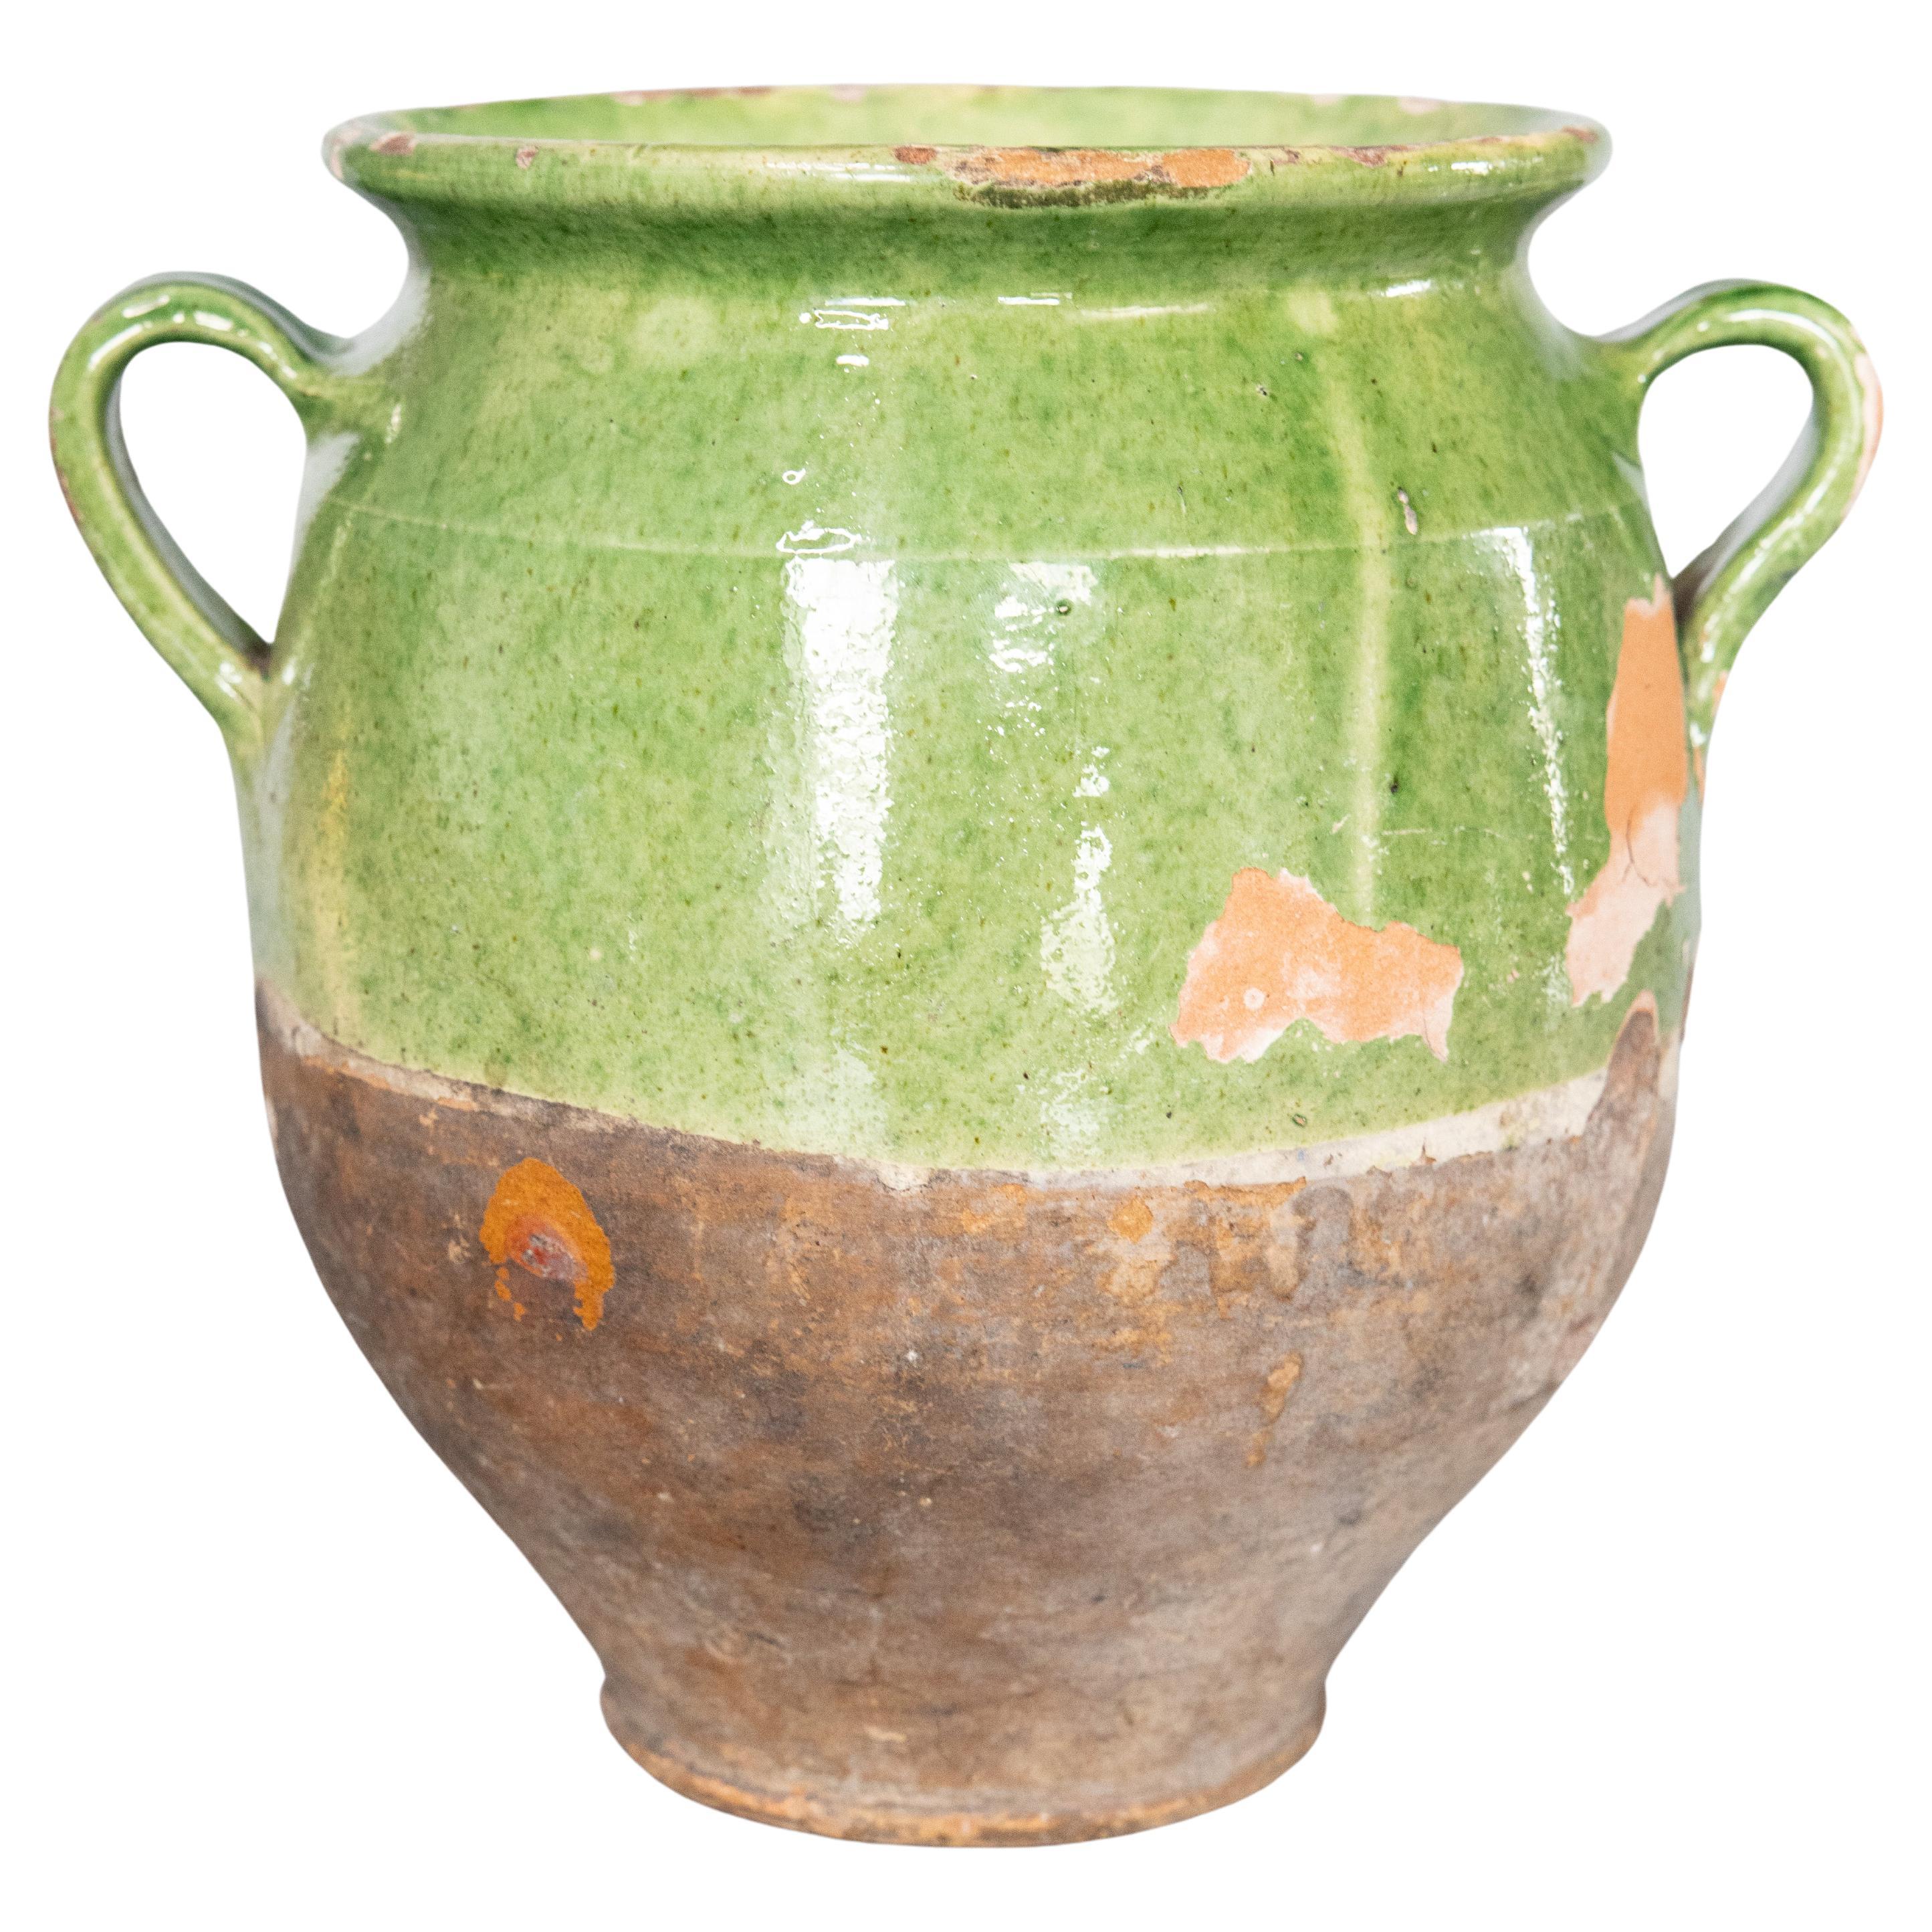 Pot à confiture vert émaillé français du 19ème siècle